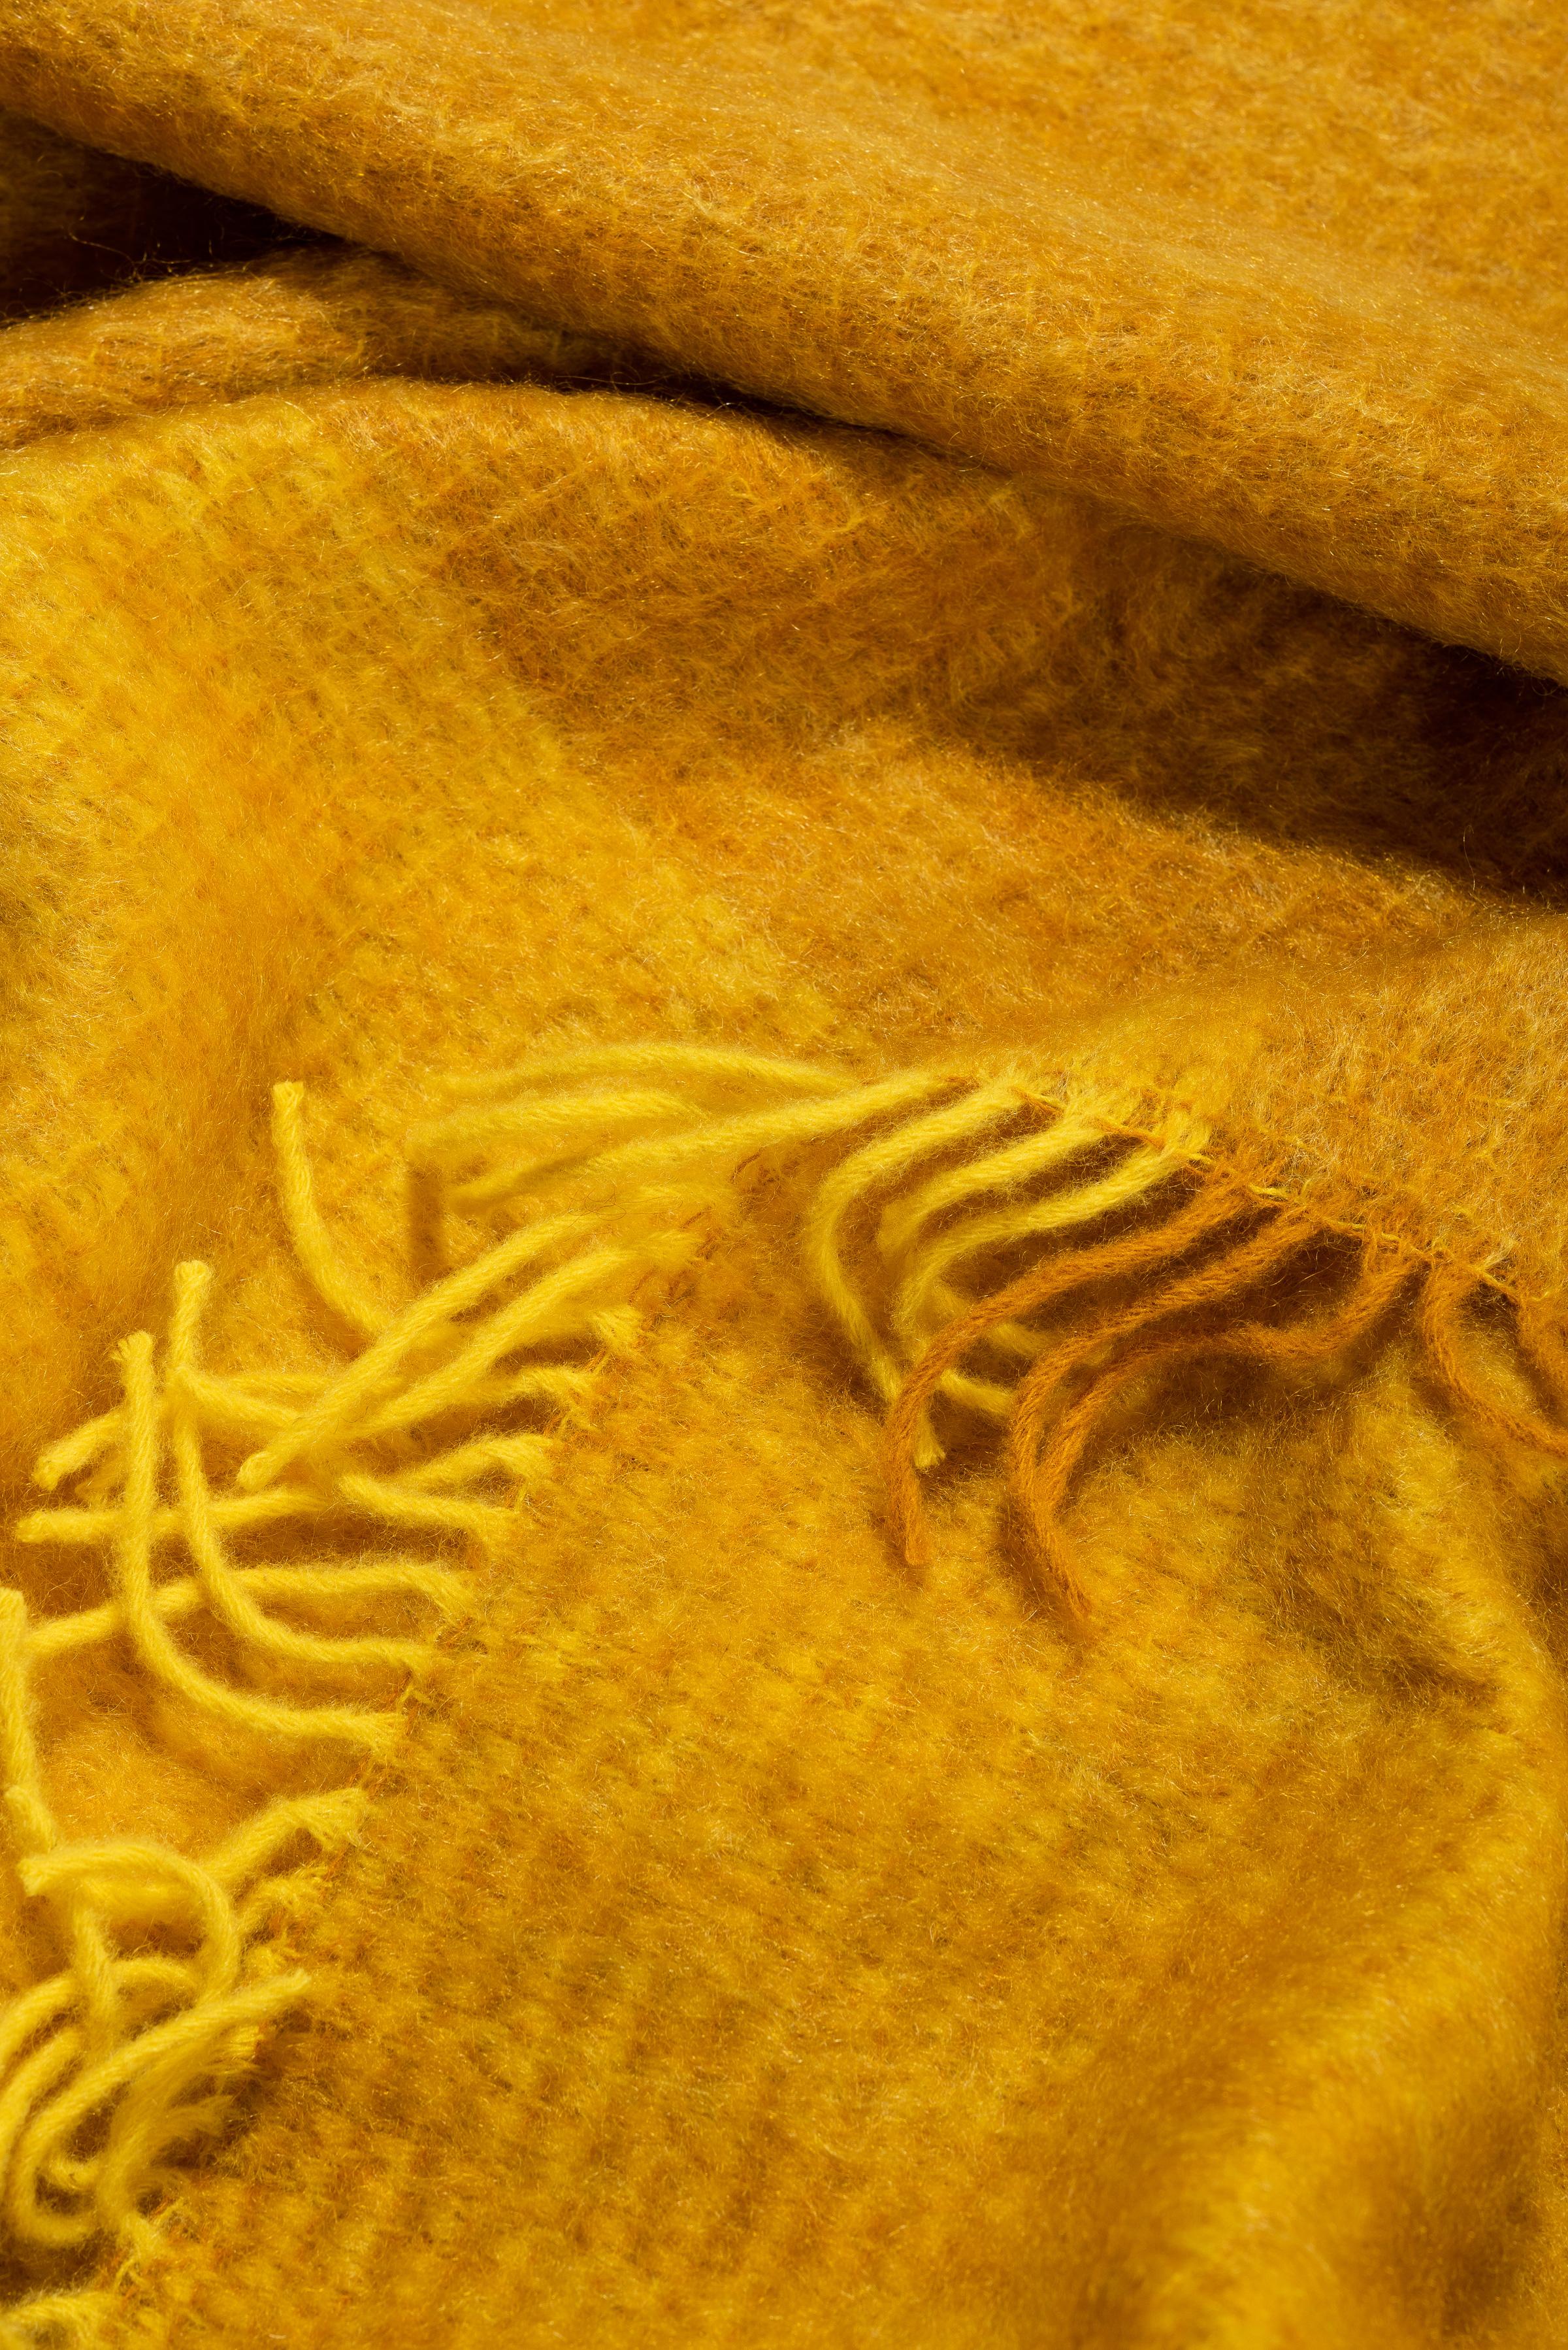 Entworfen in Berlin von Catharina Mende, gewebt aus 50% Mohair, 48% Wolle, 2% Polyamid in Spanien: Diese gelbe schmeichelnde und wärmende flauschige Mohairdecke ist der perfekte Begleiter für jede Jahreszeit - ein unverzichtbares Lieblingsstück für